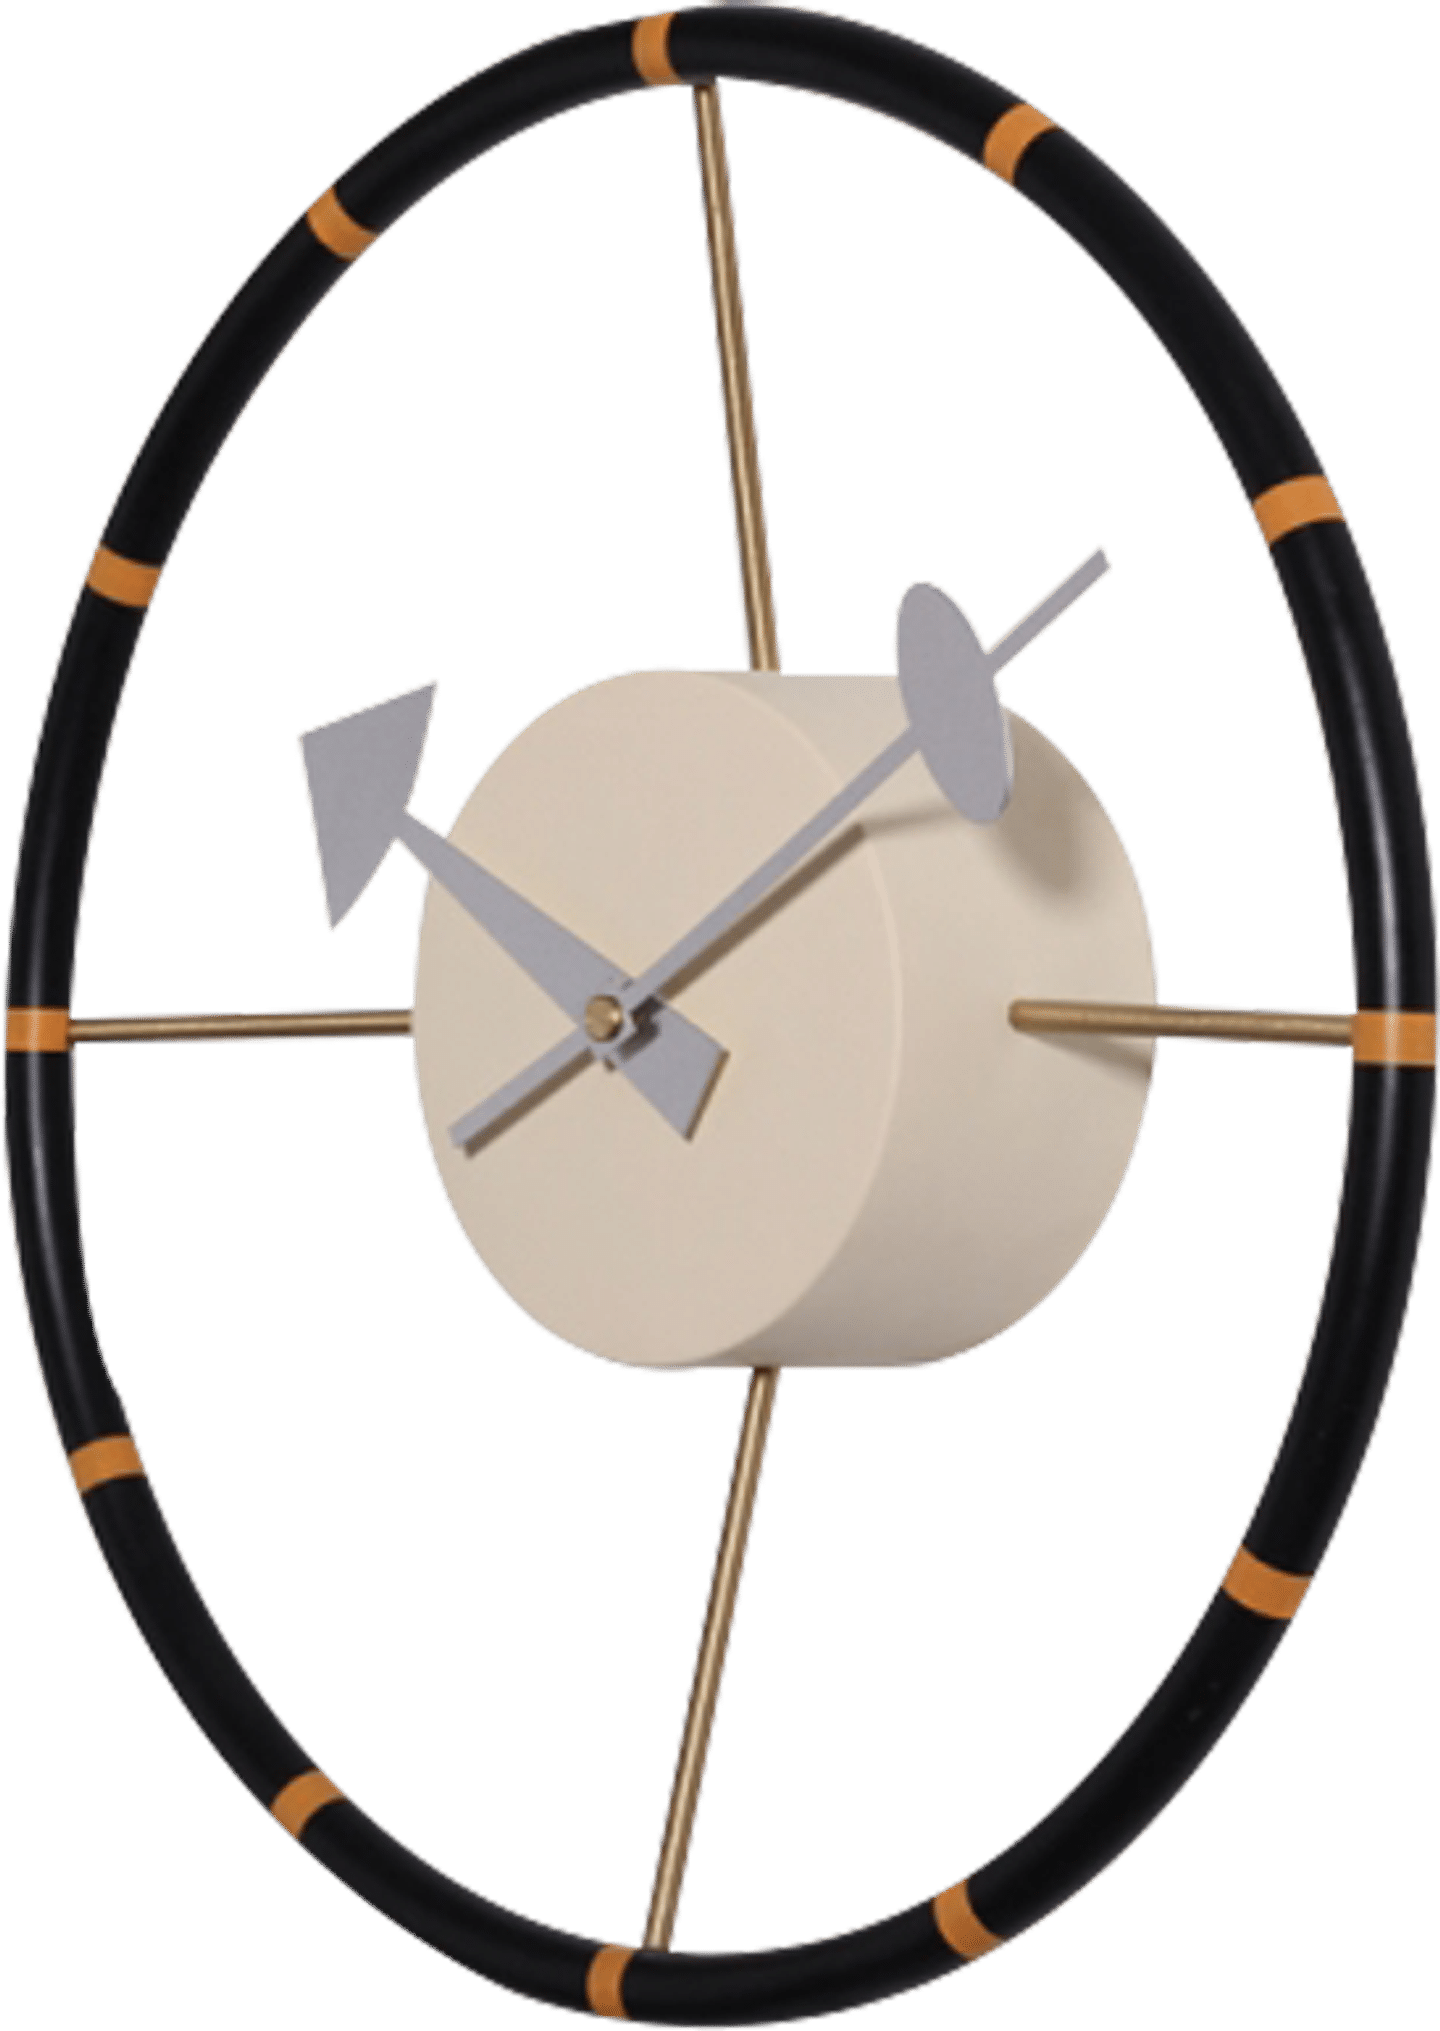 Steering Wheel Style Clock Black image.